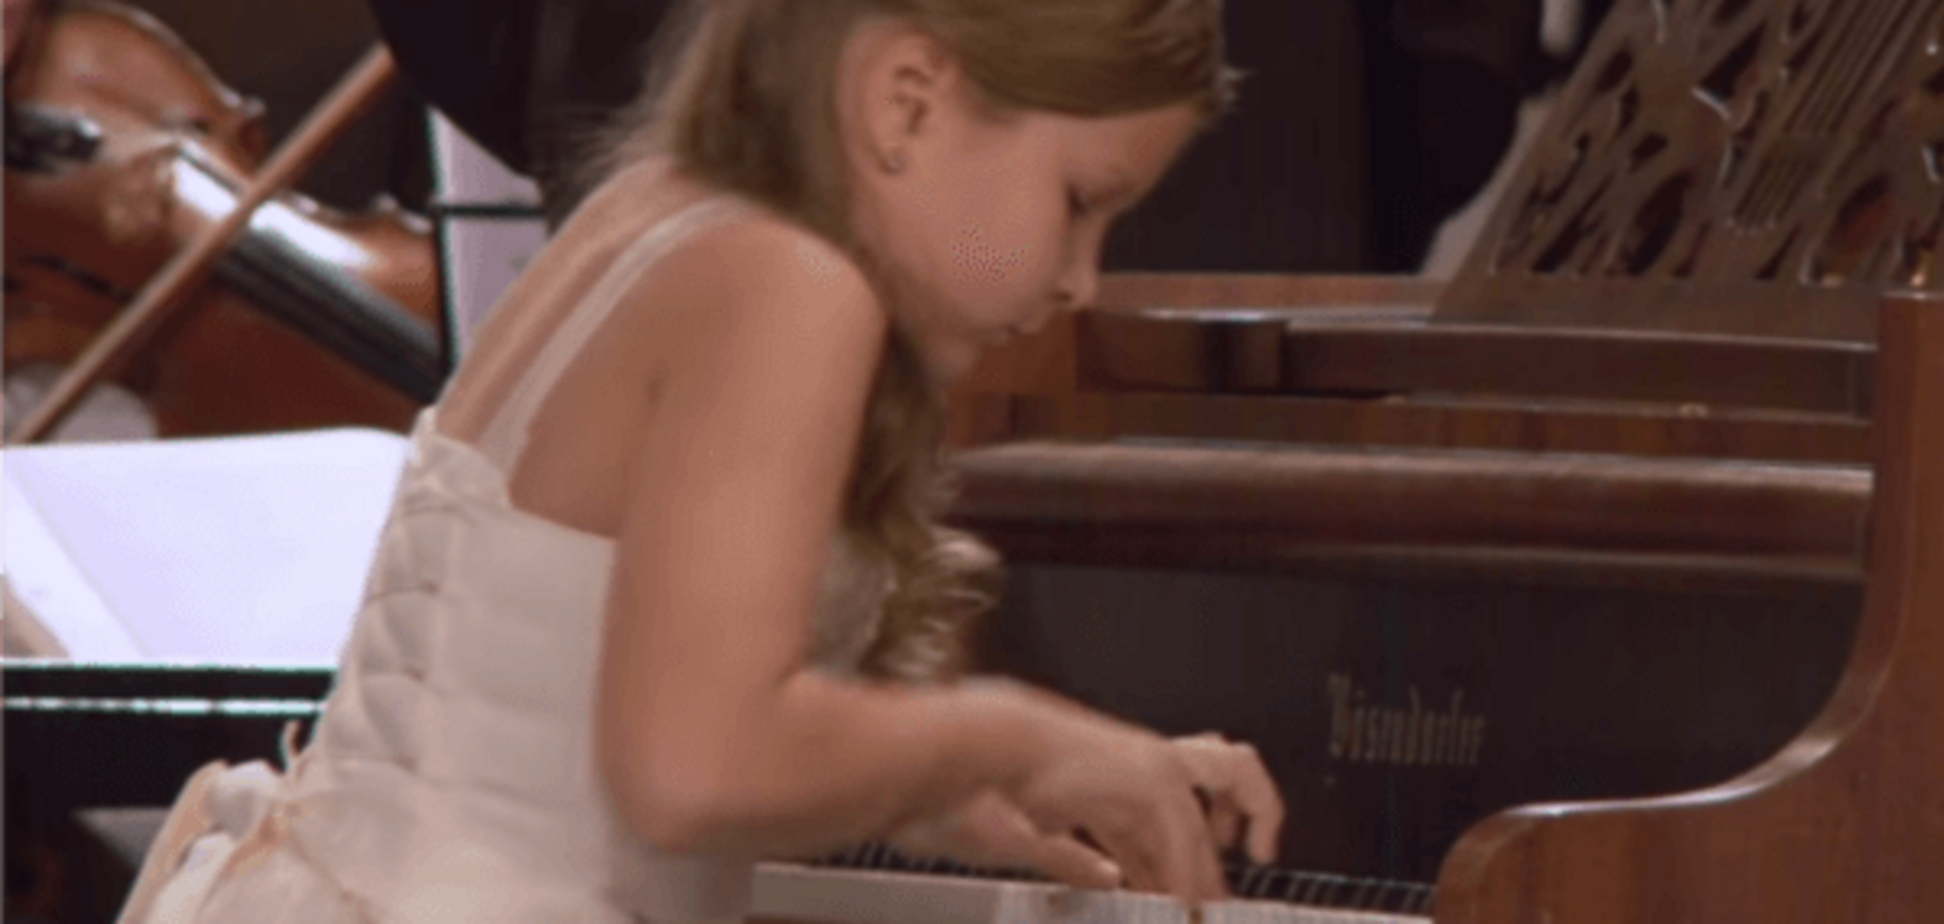 Земля талантов: юная крымчанка выиграла для Украины международный конкурс пианистов  